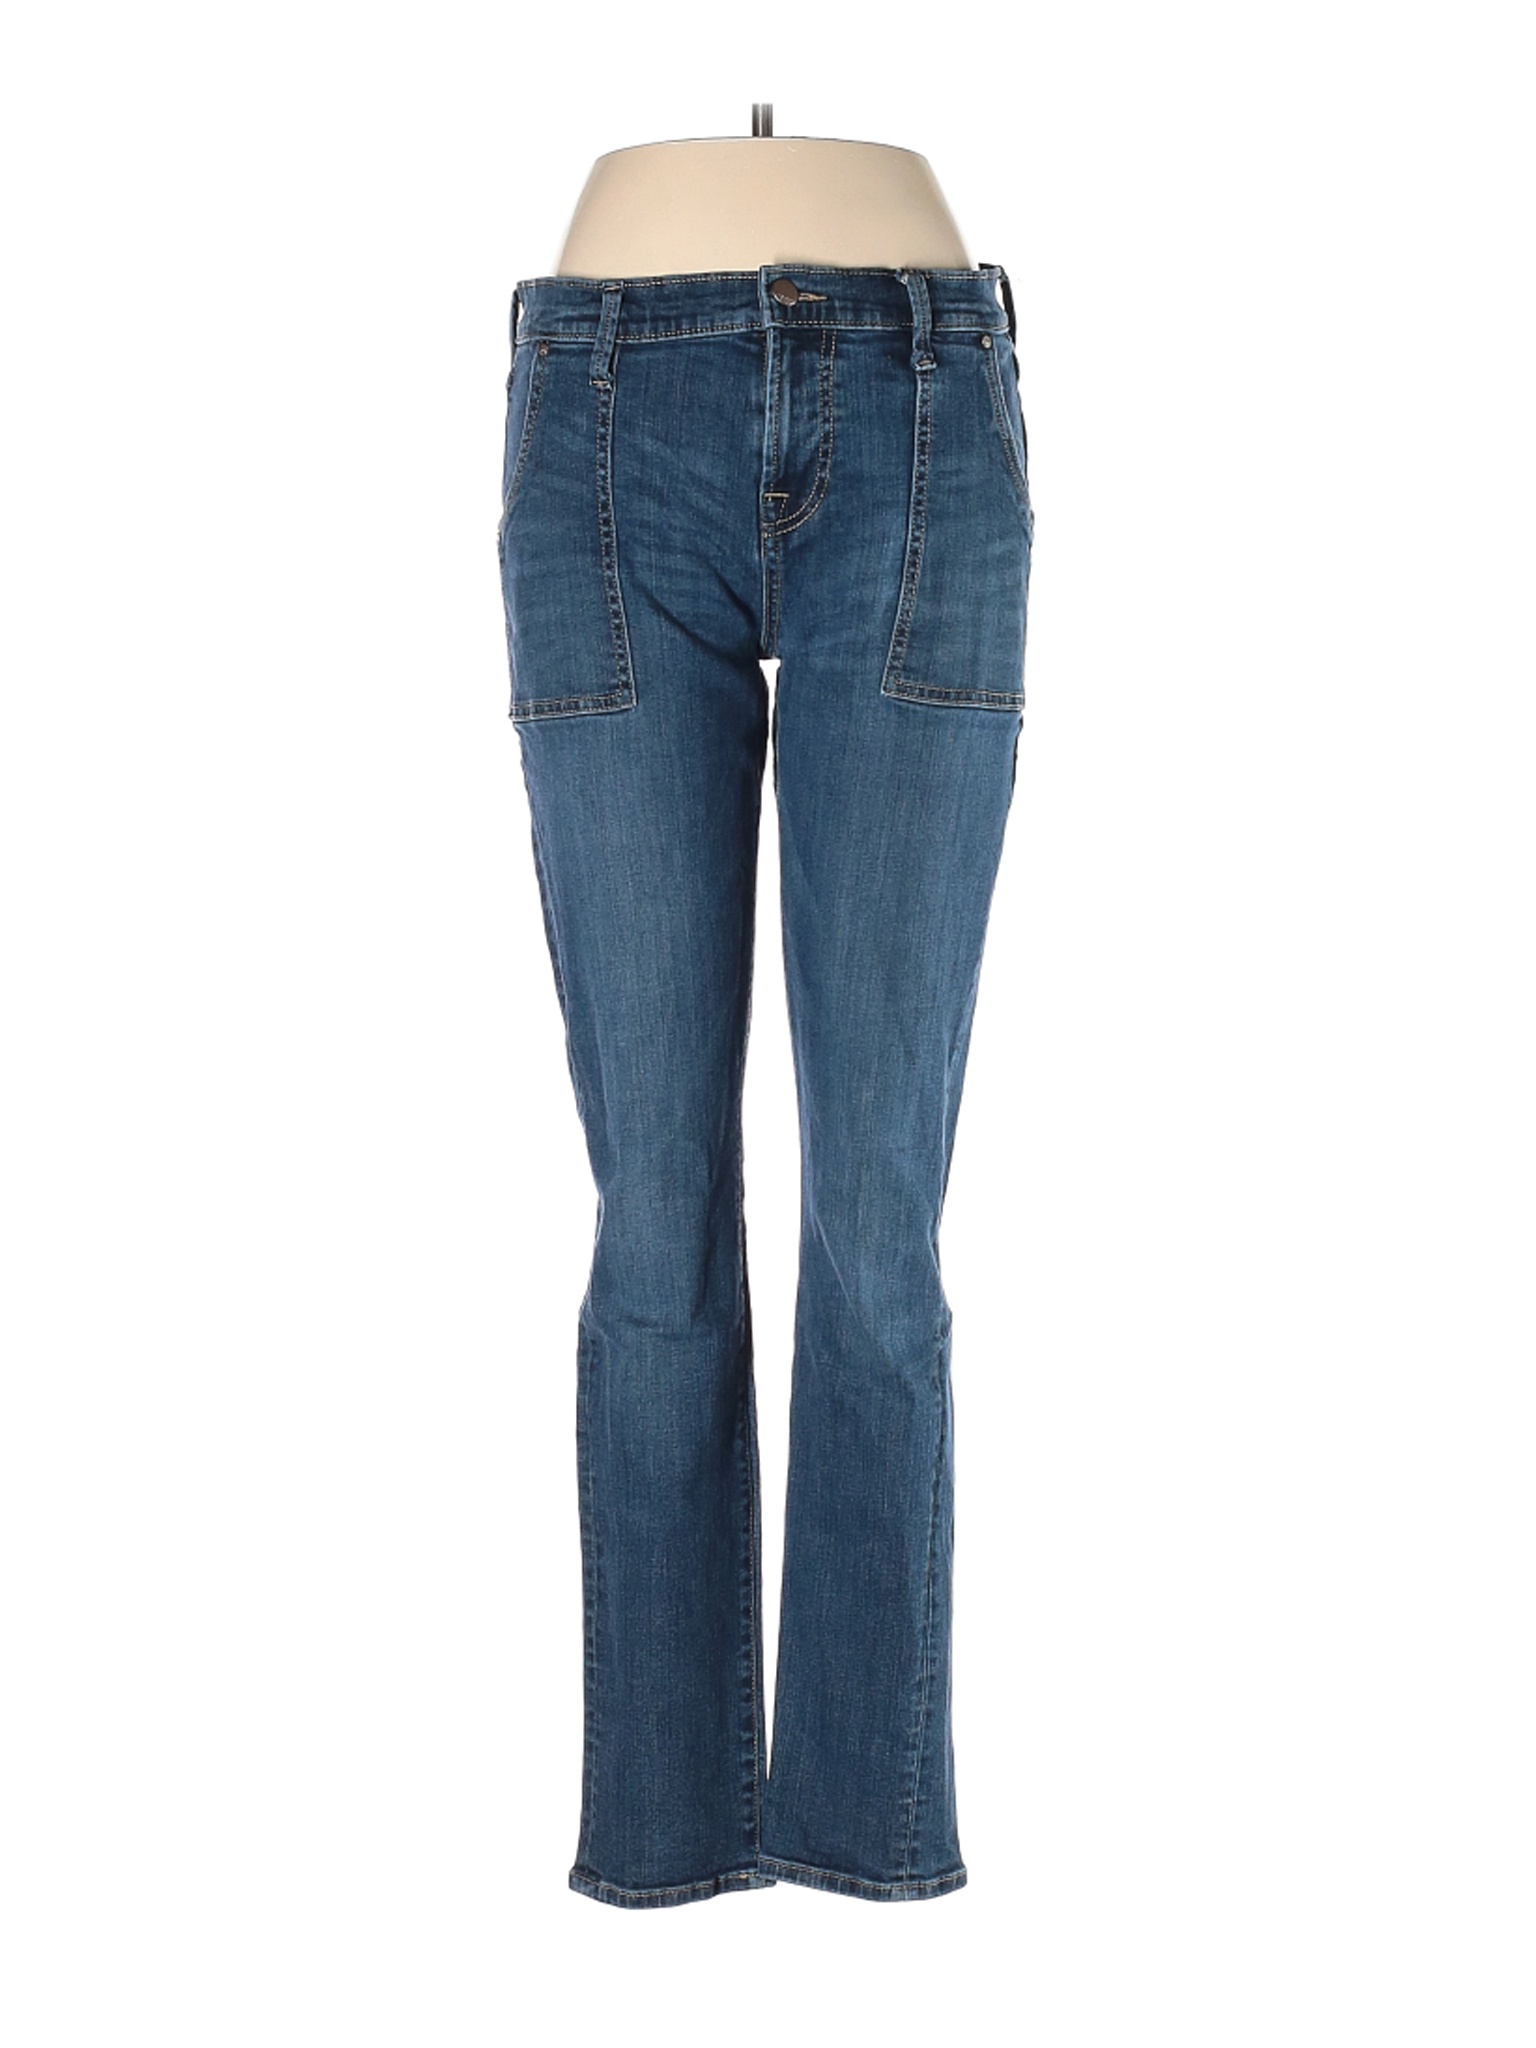 Apt. 9 Women Blue Jeans 29W | eBay